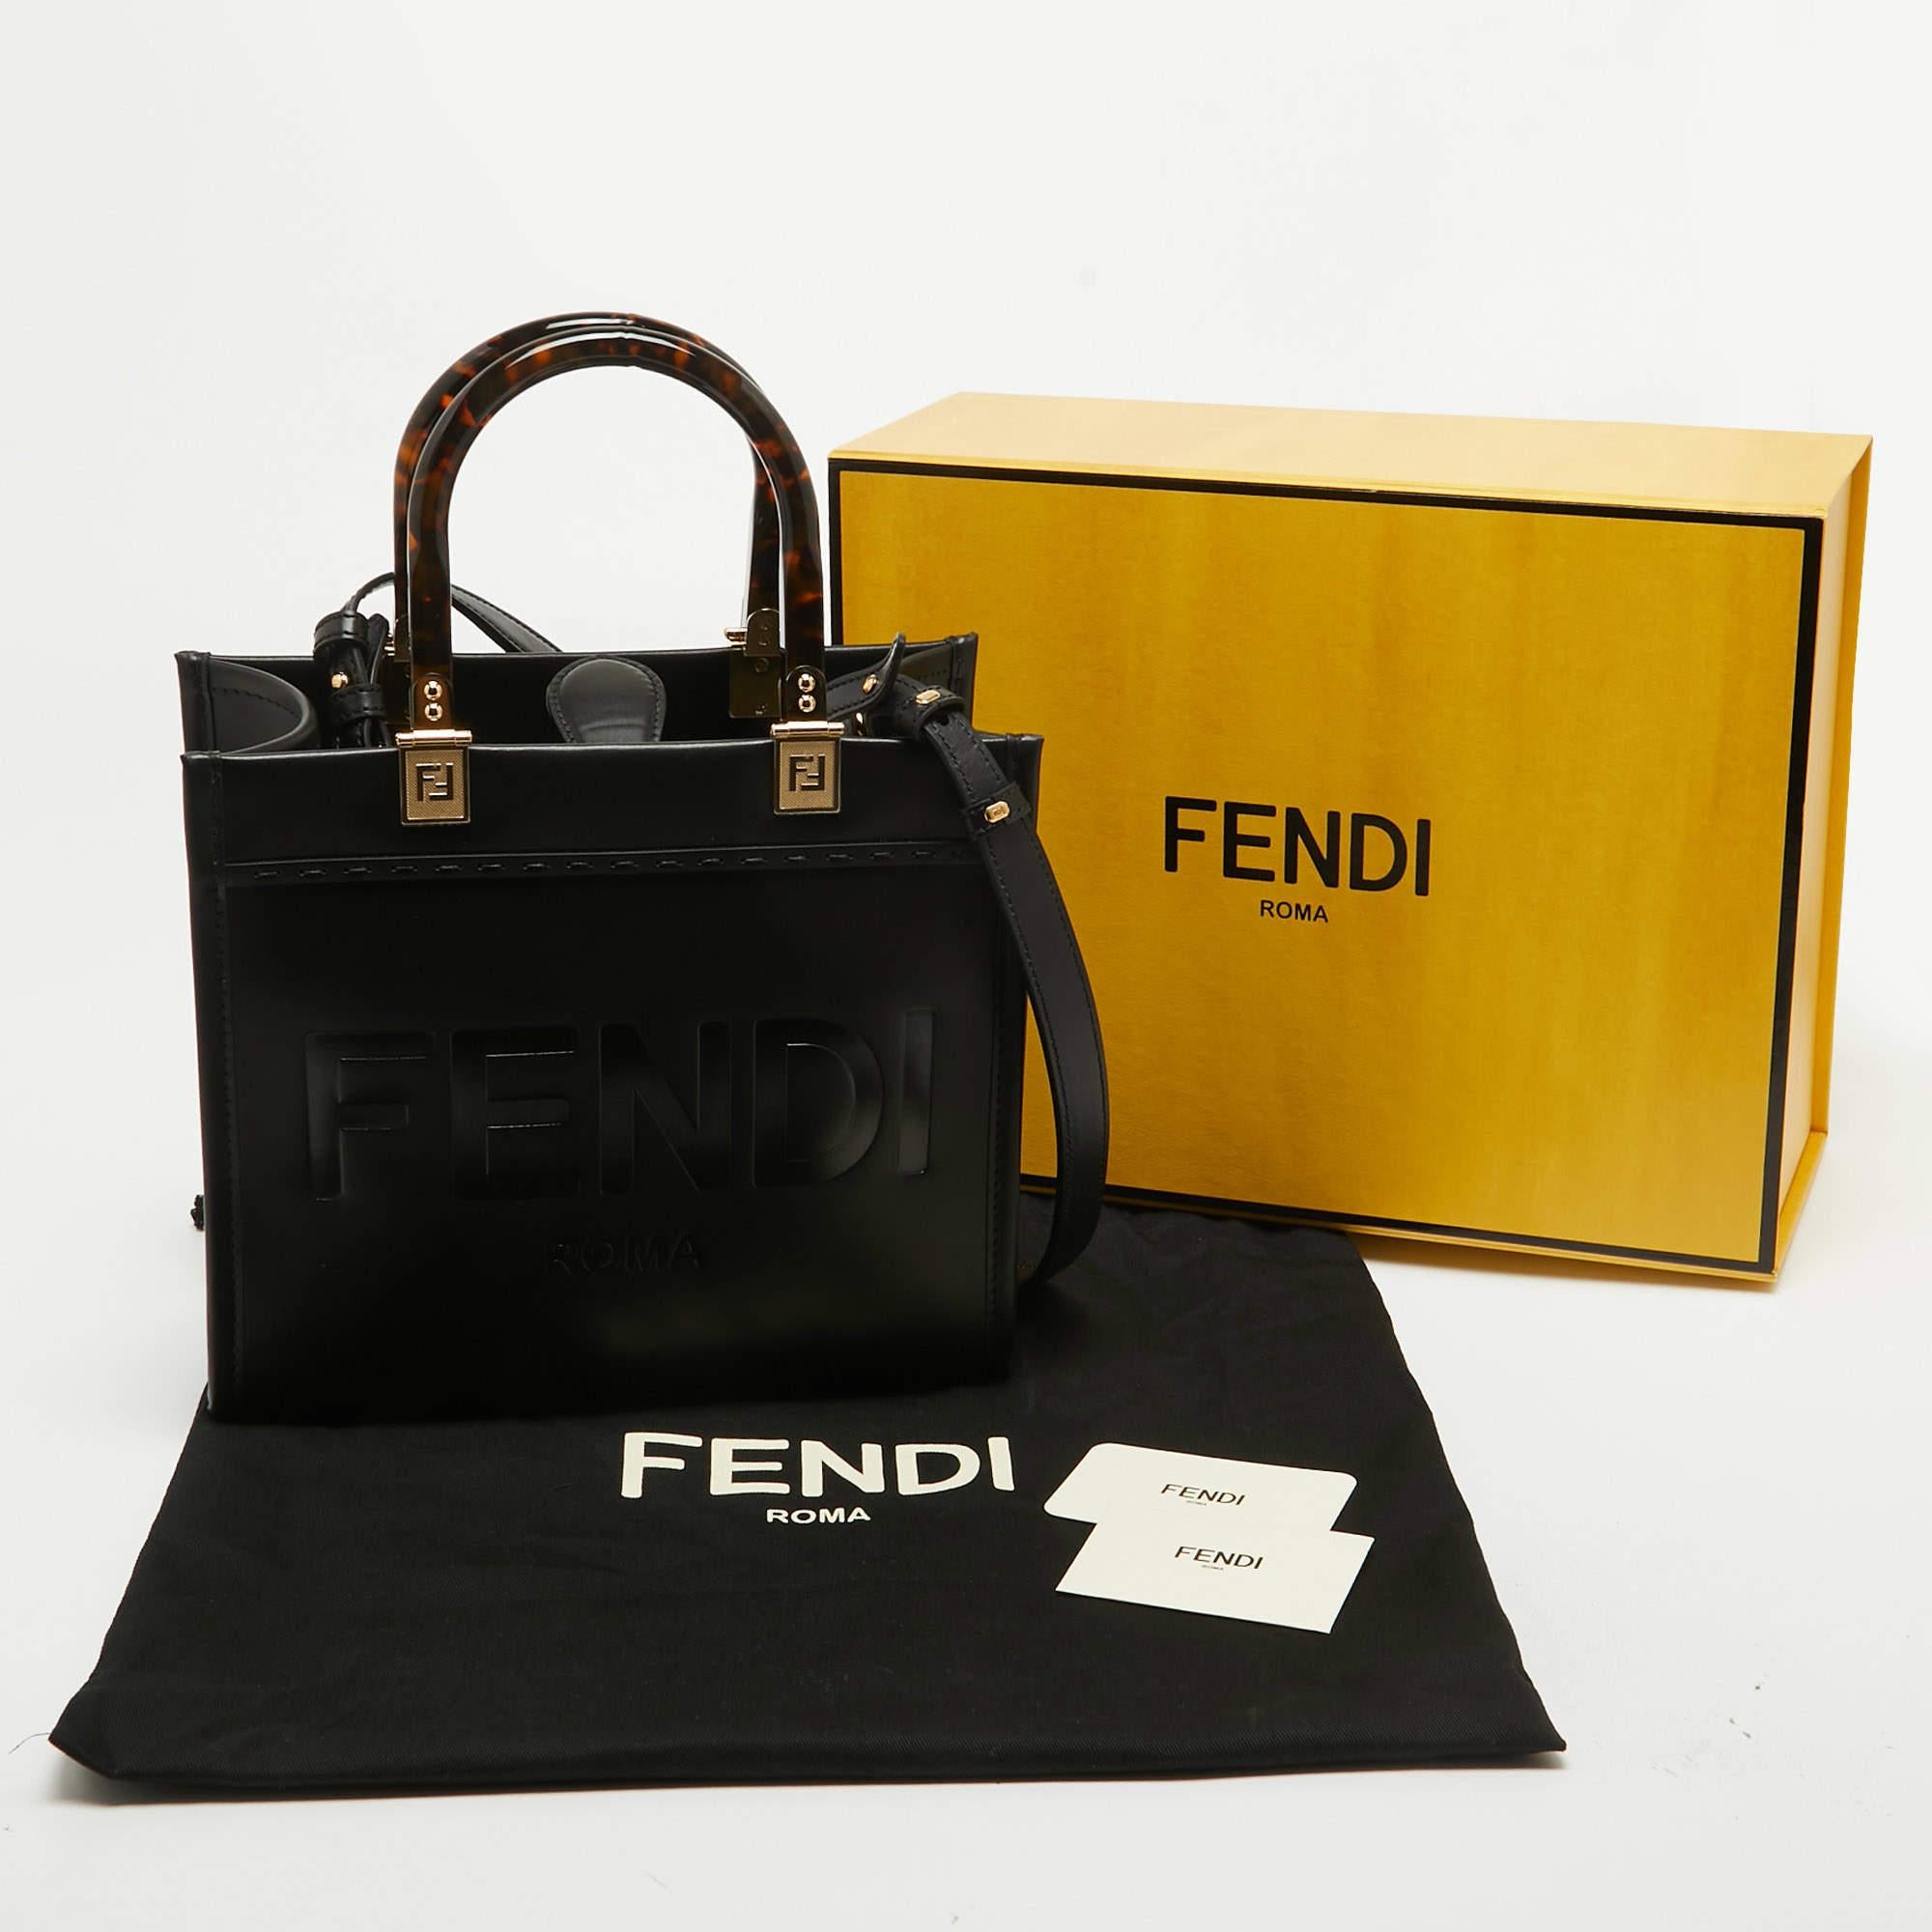 Fendi Black Leather Small Sunshine Tote In Excellent Condition For Sale In Dubai, Al Qouz 2